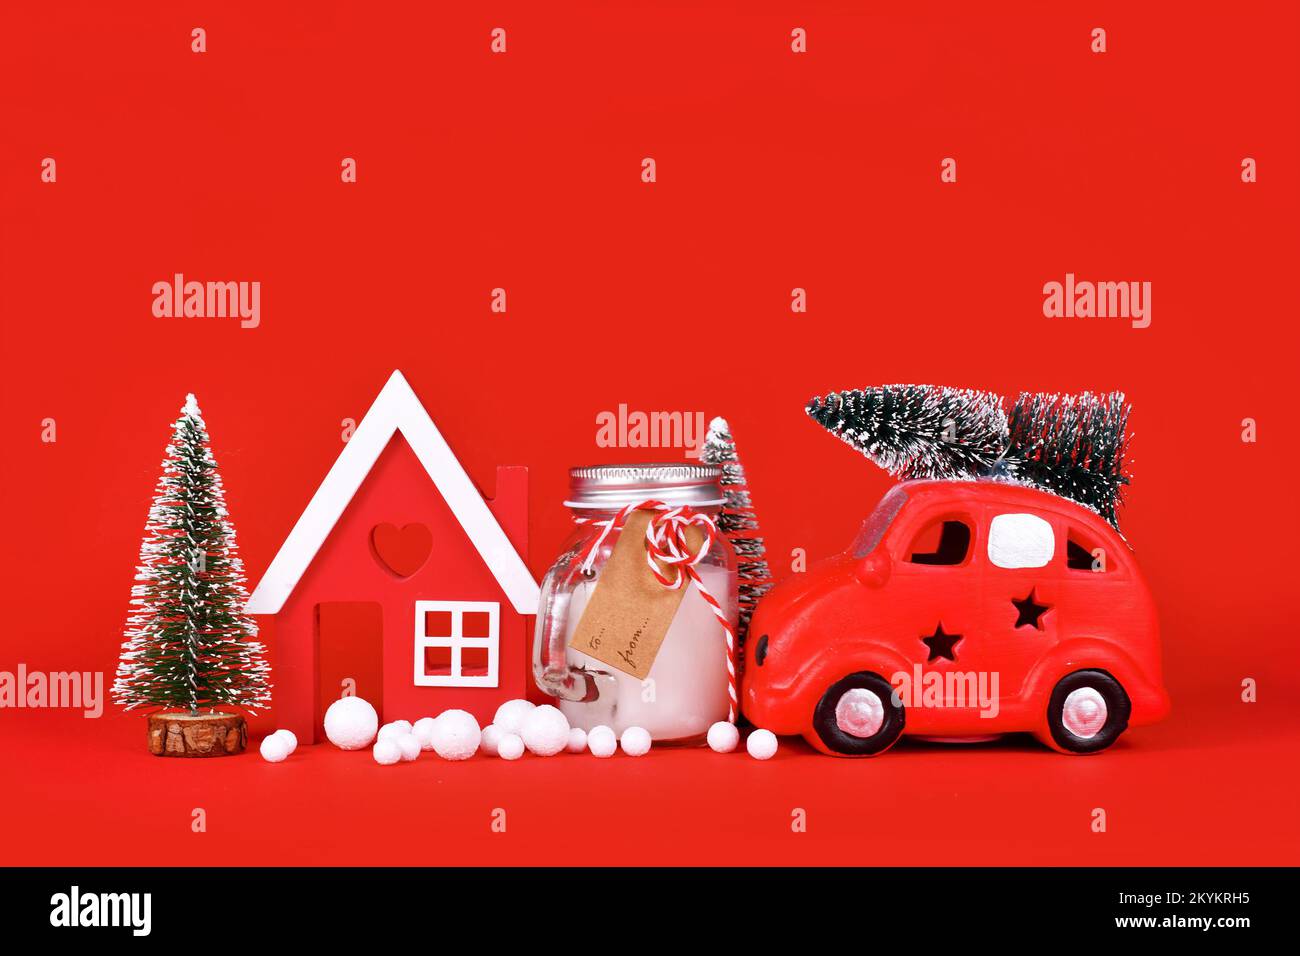 Décoration de Noël saisonnière avec voiture miniature, maison, arbres, bougie et boules de neige sur fond rouge Banque D'Images